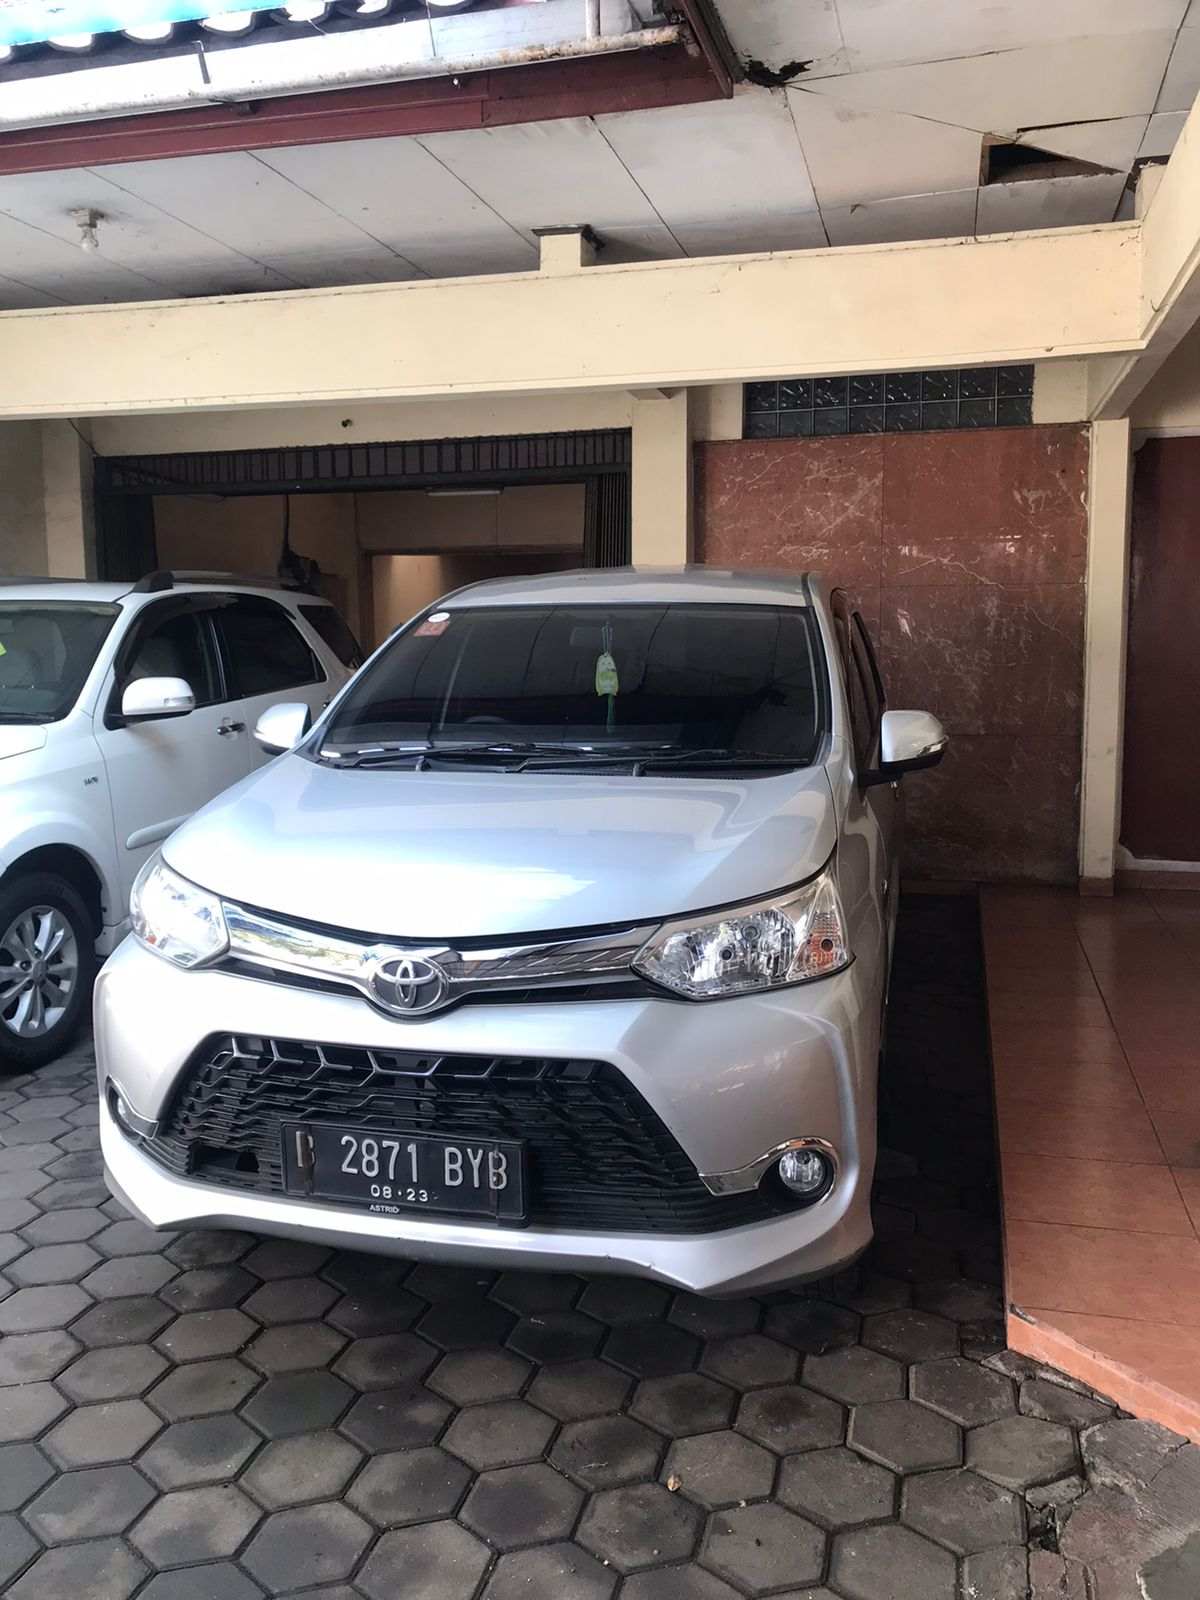 Harga Sewa Avanza Di Semarang